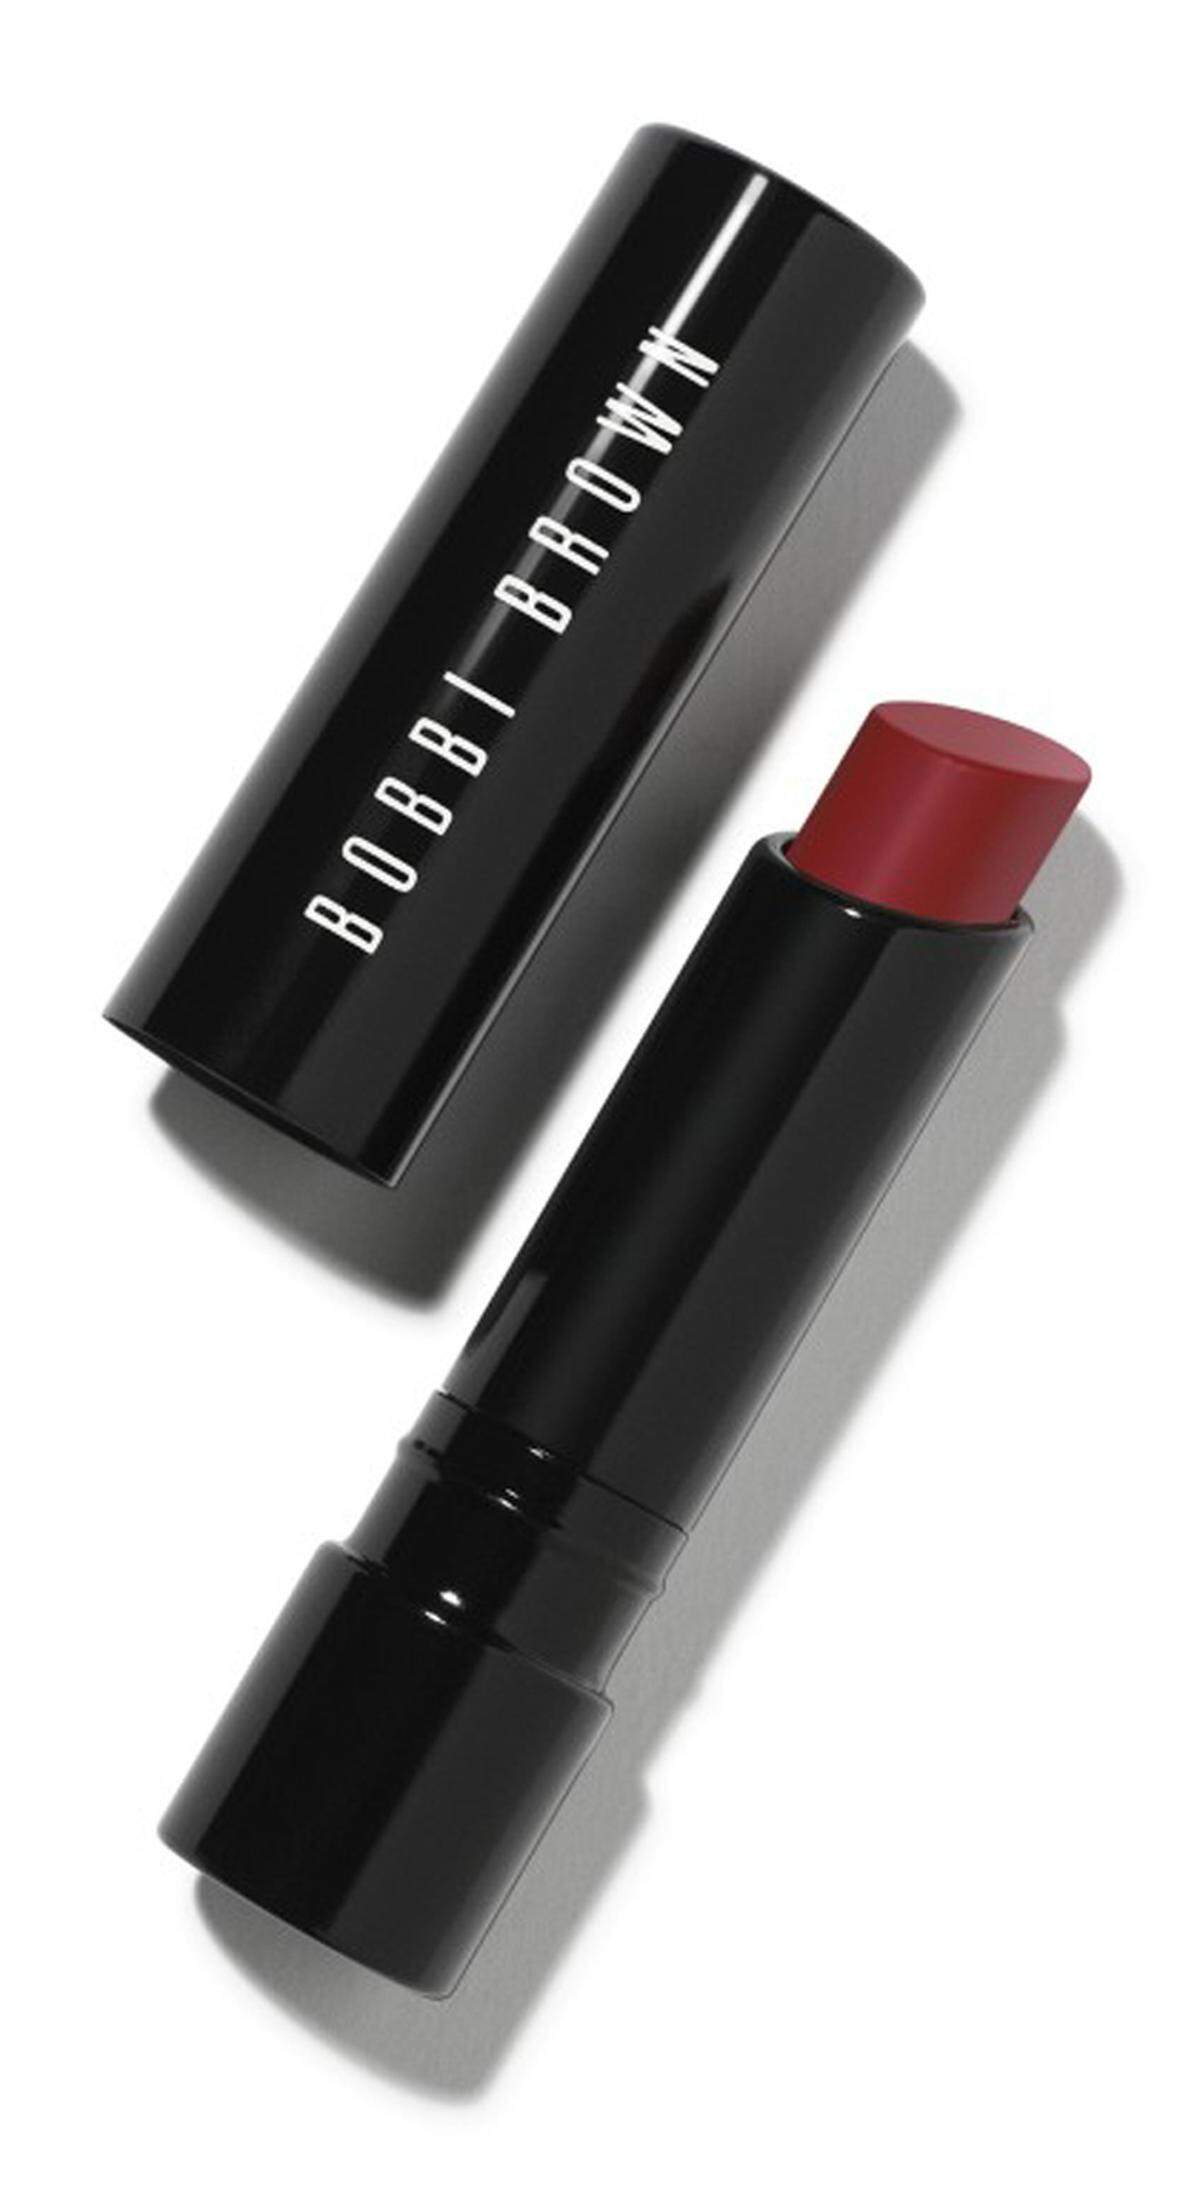 Passend dazu sollte man auf den matten Lippenstift von Bobbi Brown setzen, der die Lippen zusätzlich pflegt. Creamy Matte Lip Color, 25 Euro.